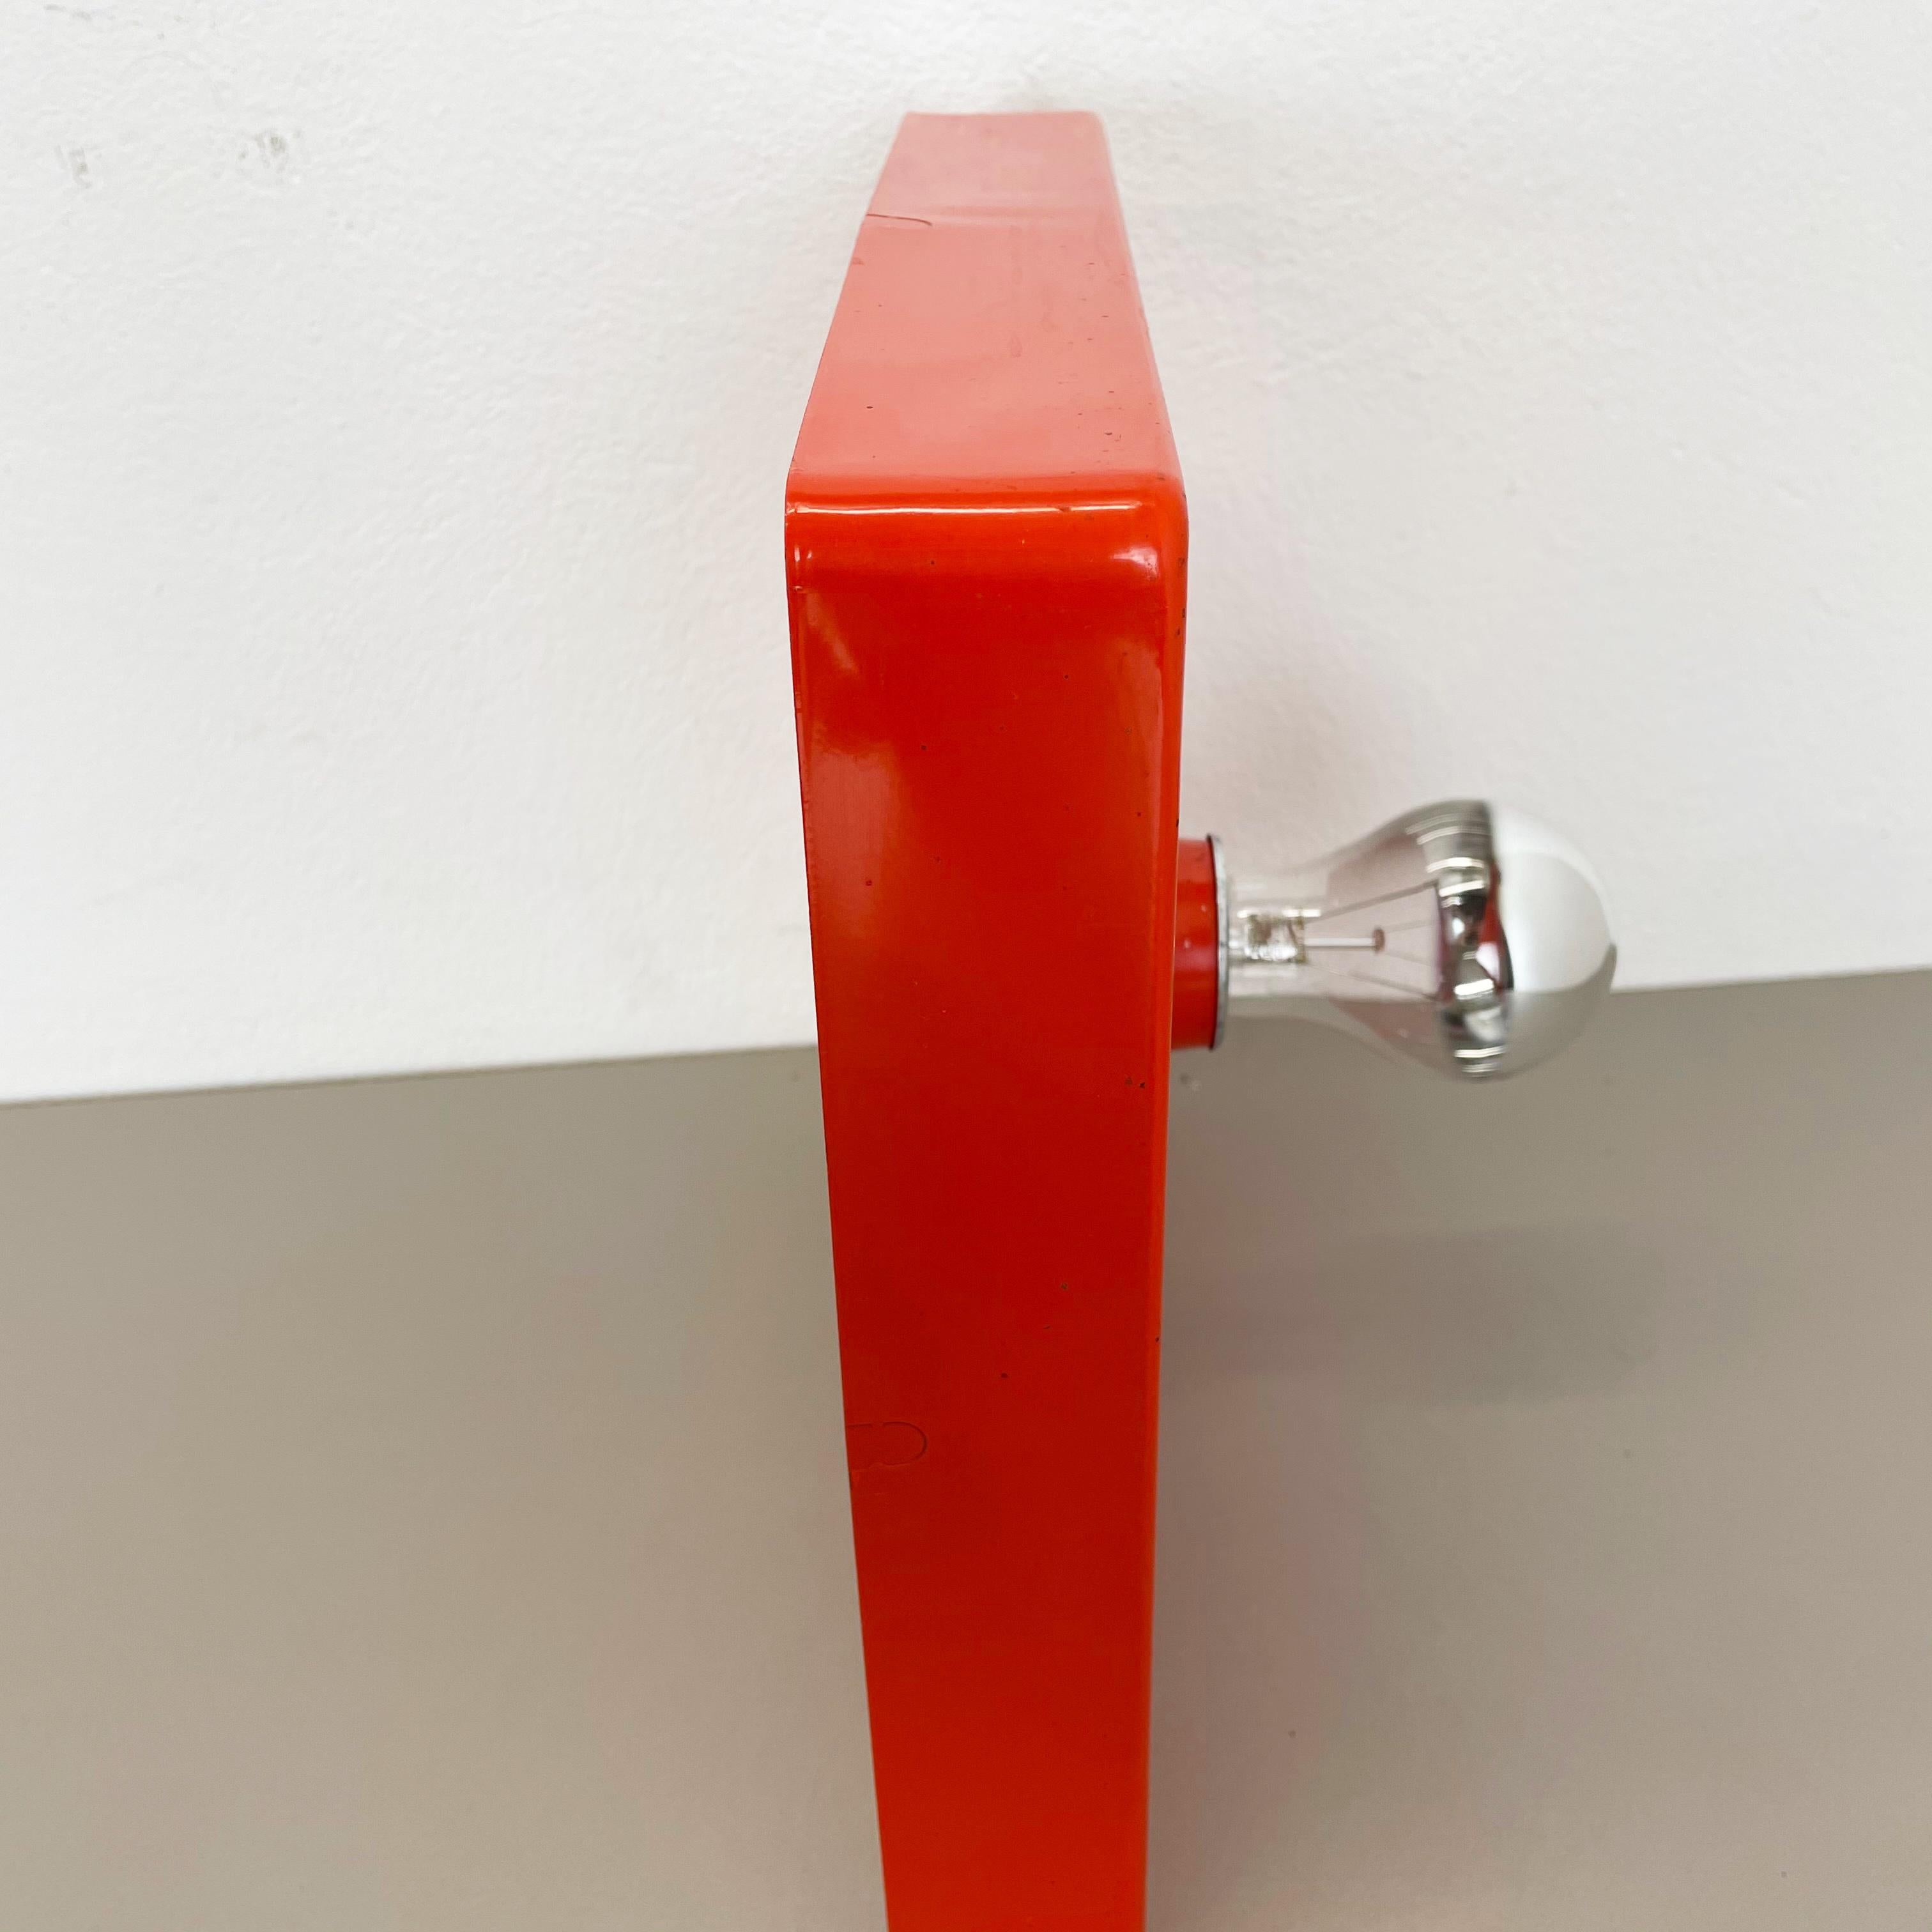 Red-Orange Minimalist Pop Art Metal Wall Light by Sölken Lights, Germany, 1970s For Sale 2